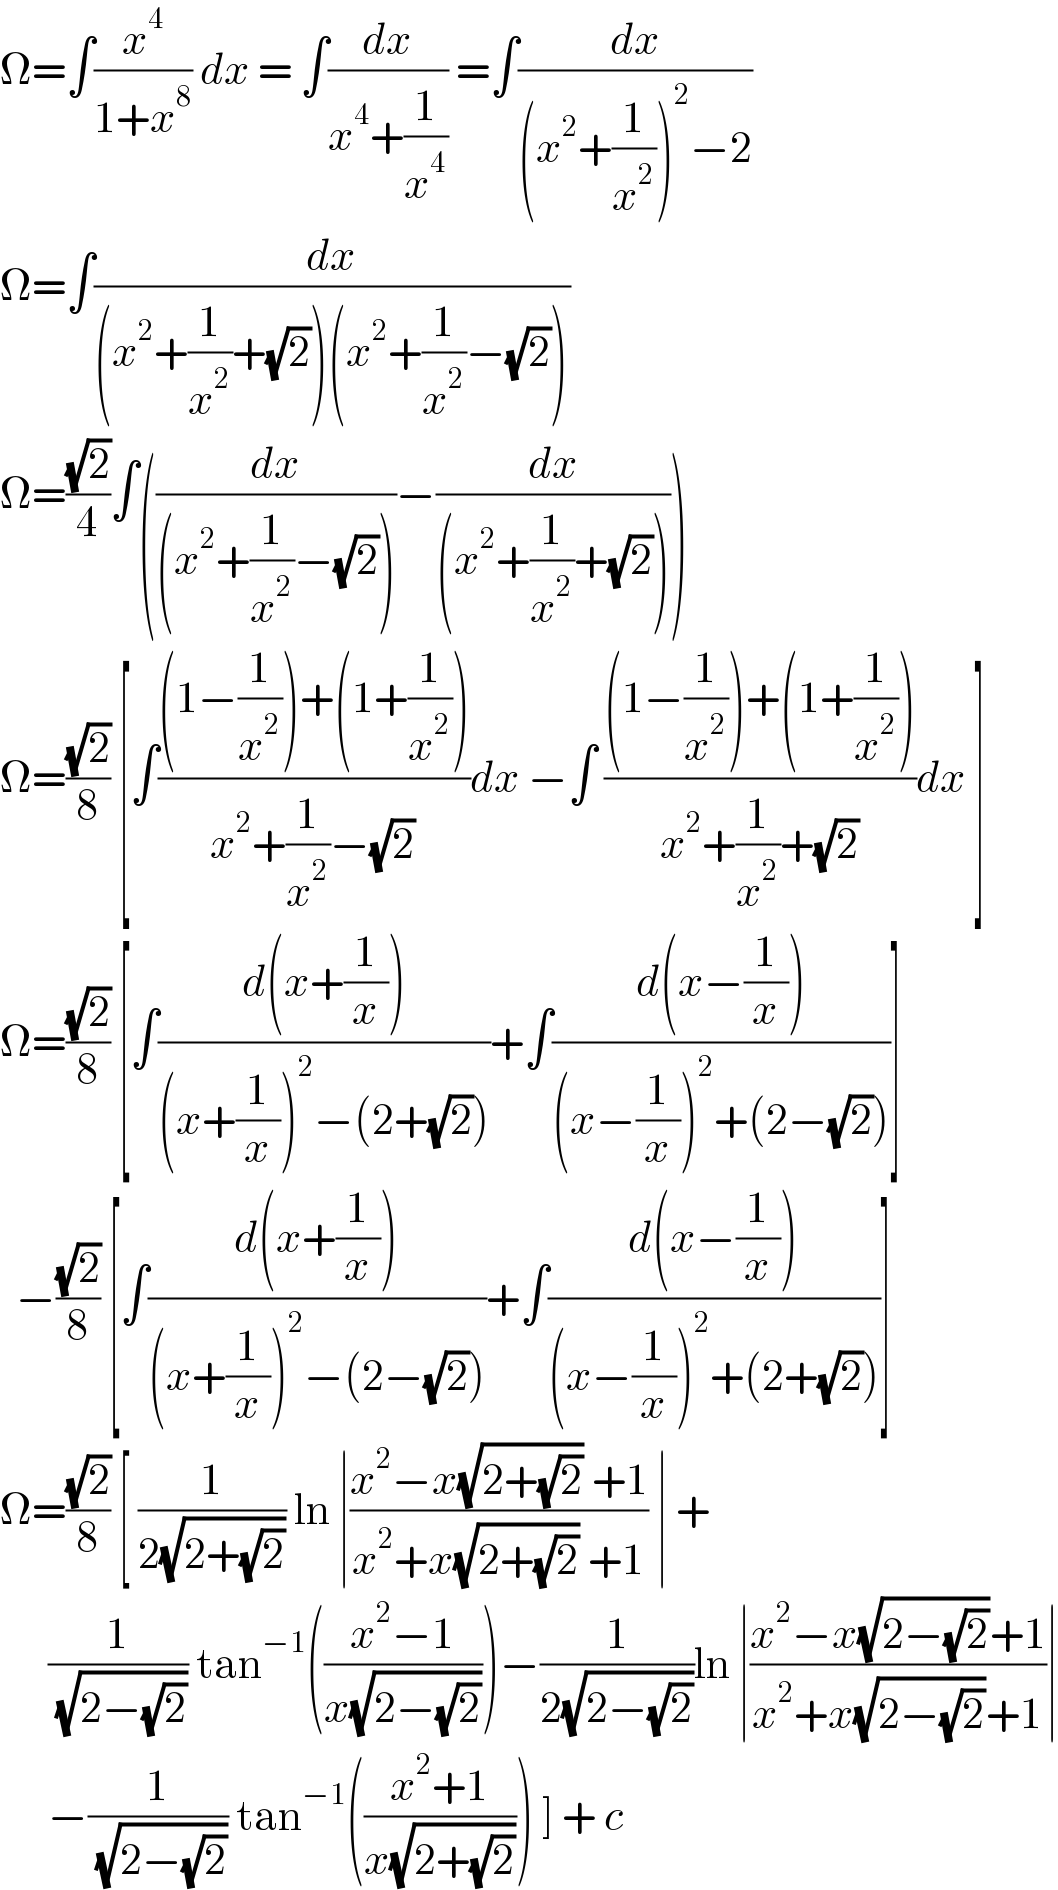 Ω=∫(x^4 /(1+x^8 )) dx = ∫(dx/(x^4 +(1/x^4 ))) =∫(dx/((x^2 +(1/x^2 ))^2 −2))  Ω=∫(dx/((x^2 +(1/x^2 )+(√2))(x^2 +(1/x^2 )−(√2))))   Ω=((√2)/4)∫((dx/((x^2 +(1/x^2 )−(√2))))−(dx/((x^2 +(1/x^2 )+(√2)))))  Ω=((√2)/8) [∫(((1−(1/x^2 ))+(1+(1/x^2 )))/(x^2 +(1/x^2 )−(√2)))dx −∫ (((1−(1/x^2 ))+(1+(1/x^2 )))/(x^2 +(1/x^2 )+(√2)))dx ]  Ω=((√2)/8) [∫((d(x+(1/x)))/((x+(1/x))^2 −(2+(√2))))+∫((d(x−(1/x)))/((x−(1/x))^2 +(2−(√2))))]    −((√2)/8) [∫((d(x+(1/x)))/((x+(1/x))^2 −(2−(√2))))+∫((d(x−(1/x)))/((x−(1/x))^2 +(2+(√2))))]  Ω=((√2)/8) [ (1/(2(√(2+(√2))))) ln ∣((x^2 −x(√(2+(√2))) +1)/(x^2 +x(√(2+(√2))) +1)) ∣ +        (1/( (√(2−(√2))))) tan^(−1) (((x^2 −1)/(x(√(2−(√2))))))−(1/(2(√(2−(√2)))))ln ∣((x^2 −x(√(2−(√2)))+1)/(x^2 +x(√(2−(√2)))+1))∣        −(1/( (√(2−(√2))))) tan^(−1) (((x^2 +1)/(x(√(2+(√2)))))) ] + c   